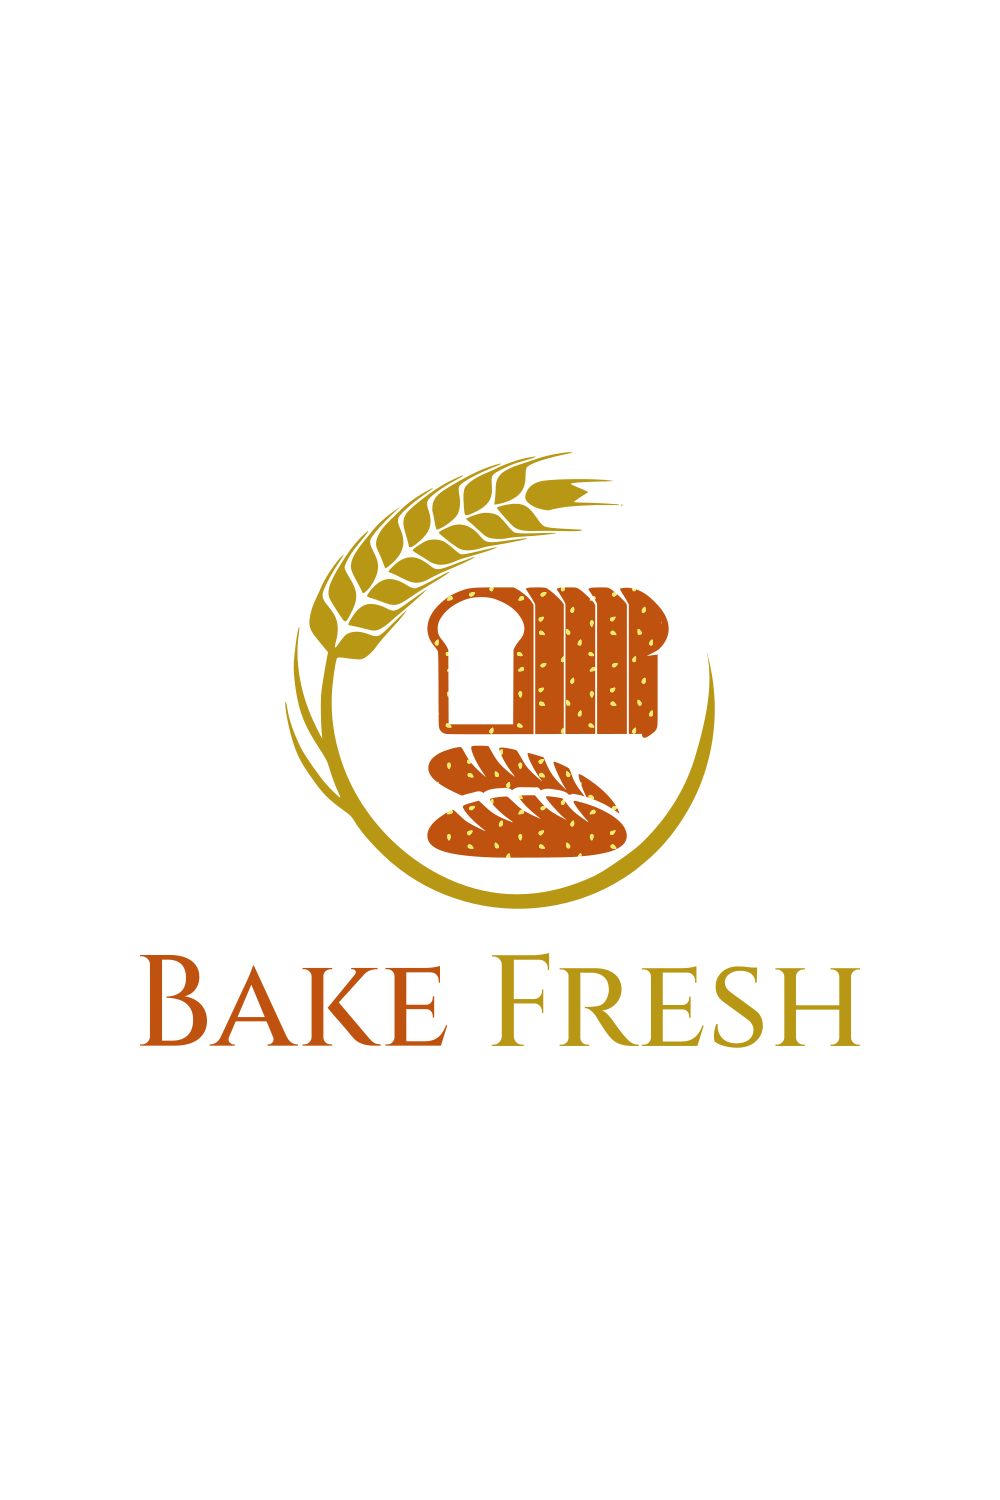 Custom Design Bake Shop Logo pinterest image.